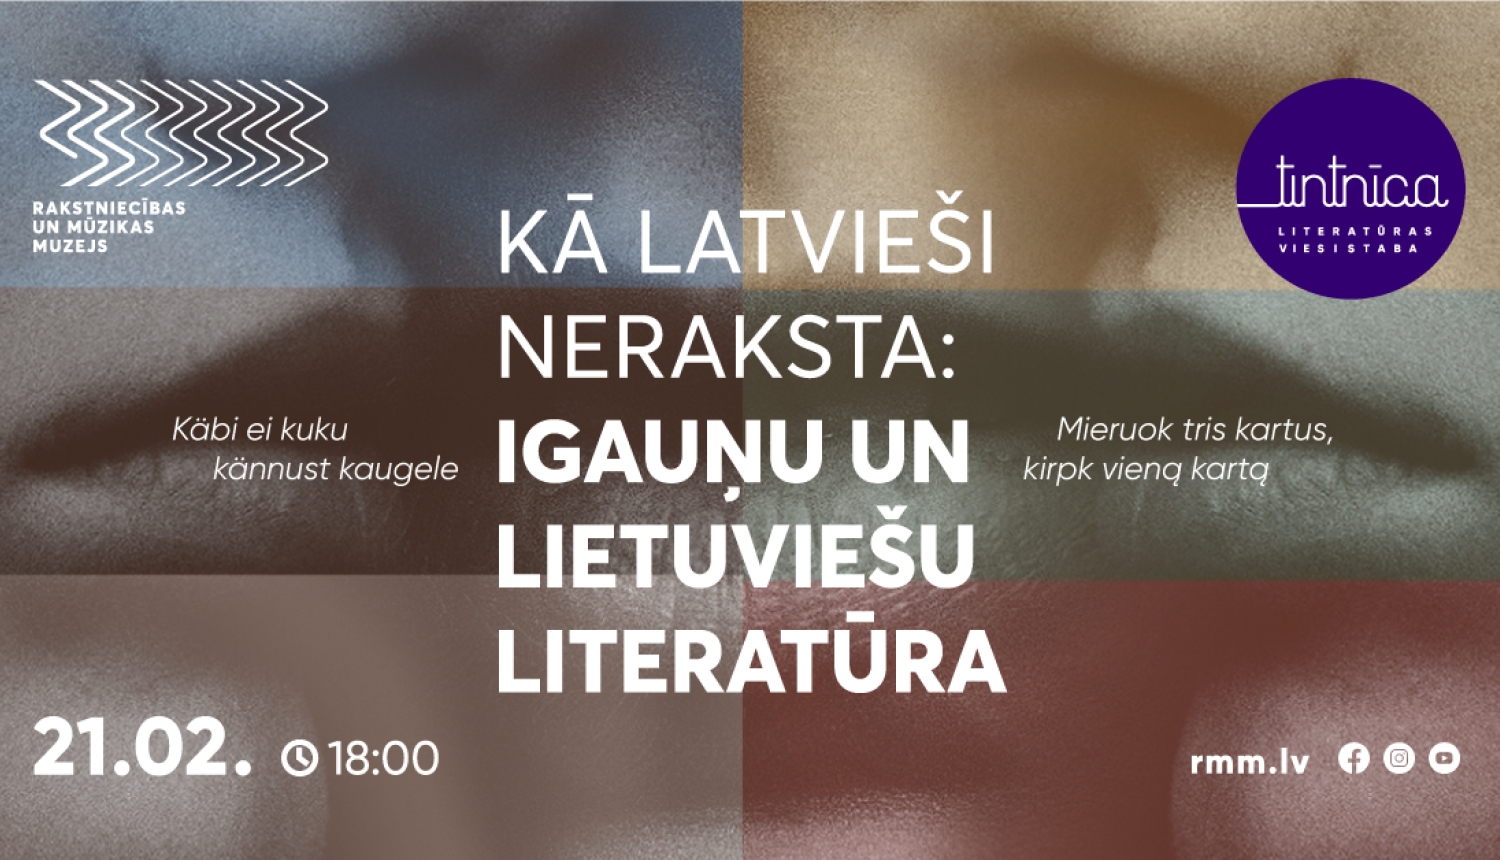 Teksts uz attēla: sarunu un literatūras lasījumu vakars "Kā latvieši neraksta: igauņu un lietuviešu literatūra" pasākumu ciklā "Literatūras viesistaba"